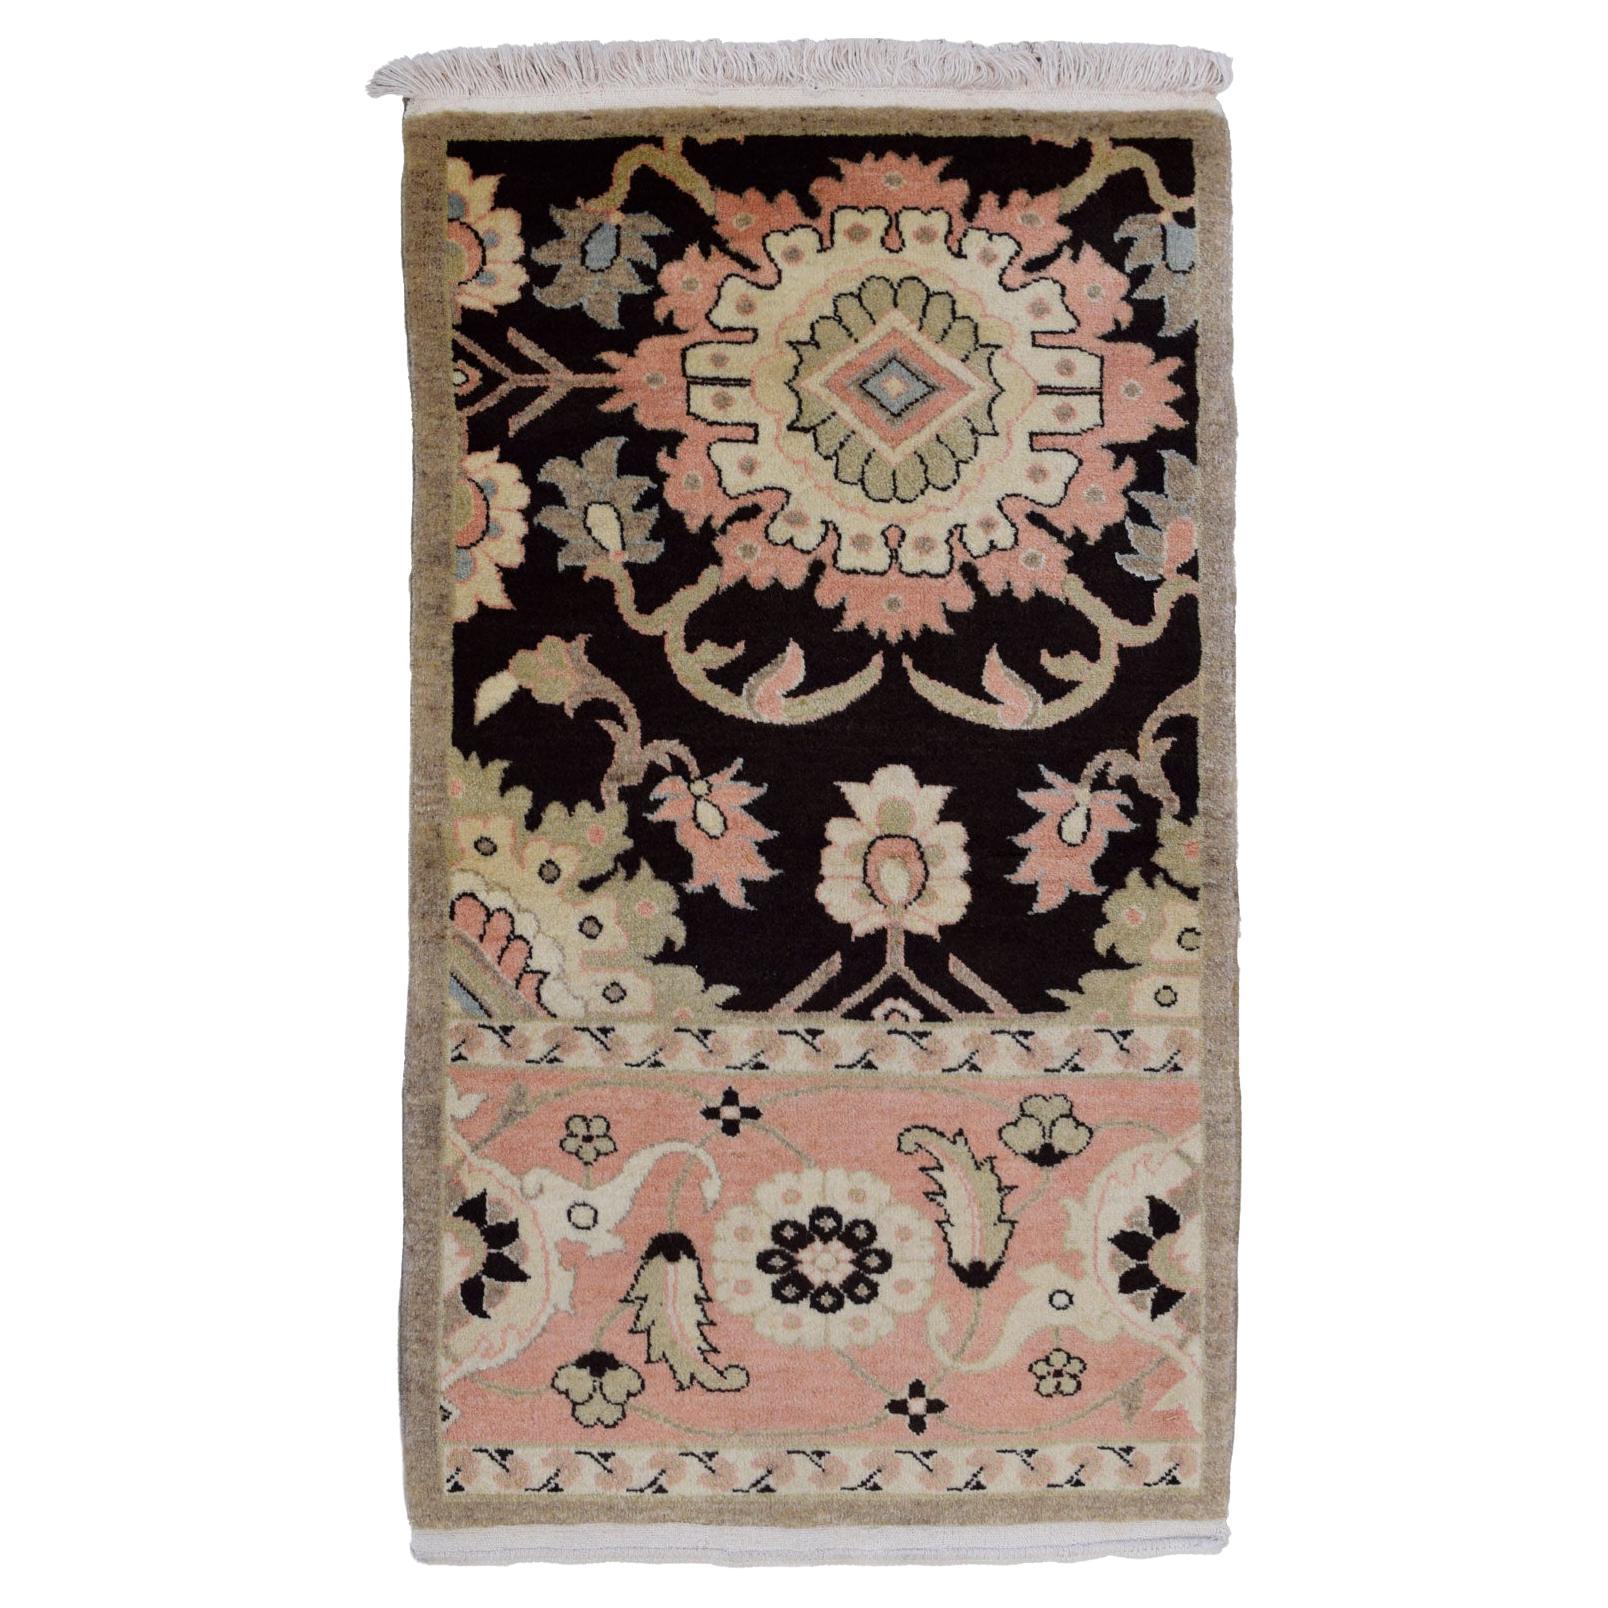 Wool Persian Farahan Rug, Pink, Black, and Gray, 2’ x 4’